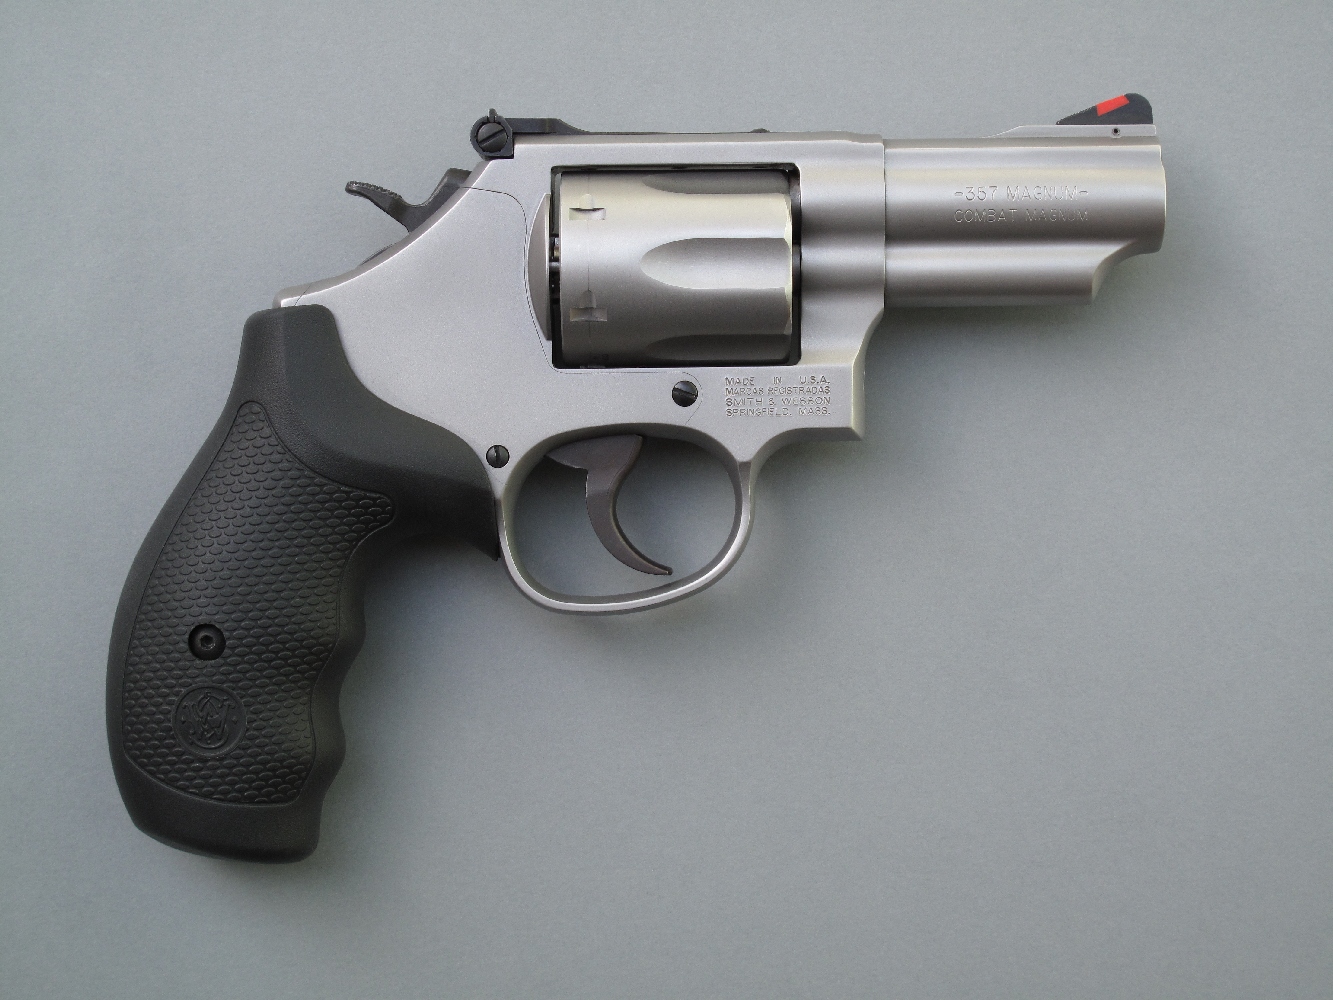 Ce revolver se démarque radicalement des traditionnels « snub noses » par son puissant calibre et par la présence d’une hausse réglable qui lui assure sa précision en cible.